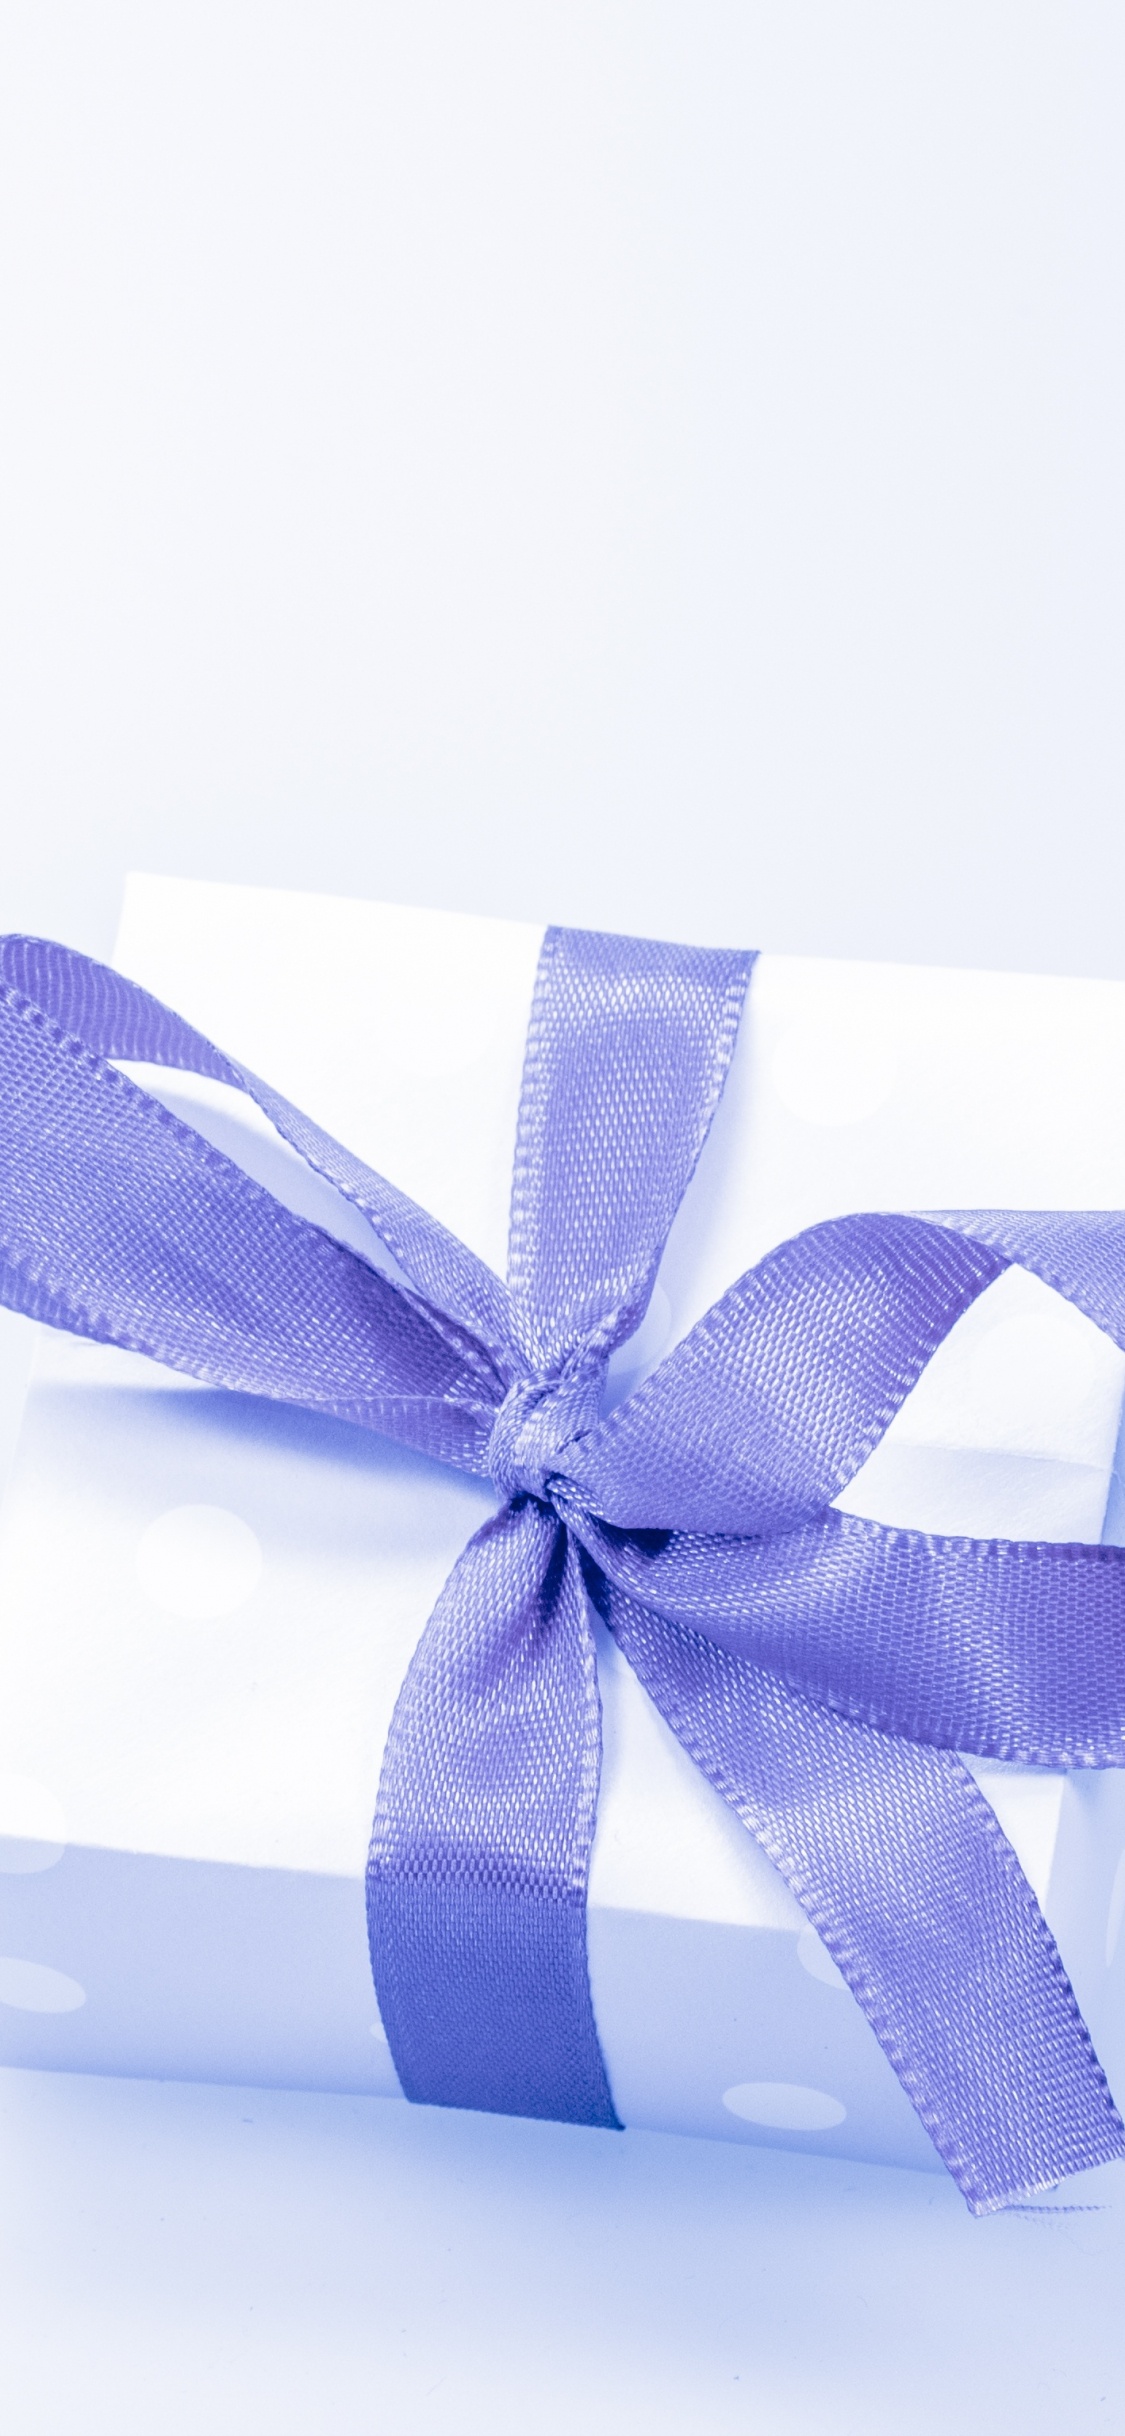 礼物, 礼品卡, 礼品包装, 丝带, 紫罗兰色 壁纸 1125x2436 允许